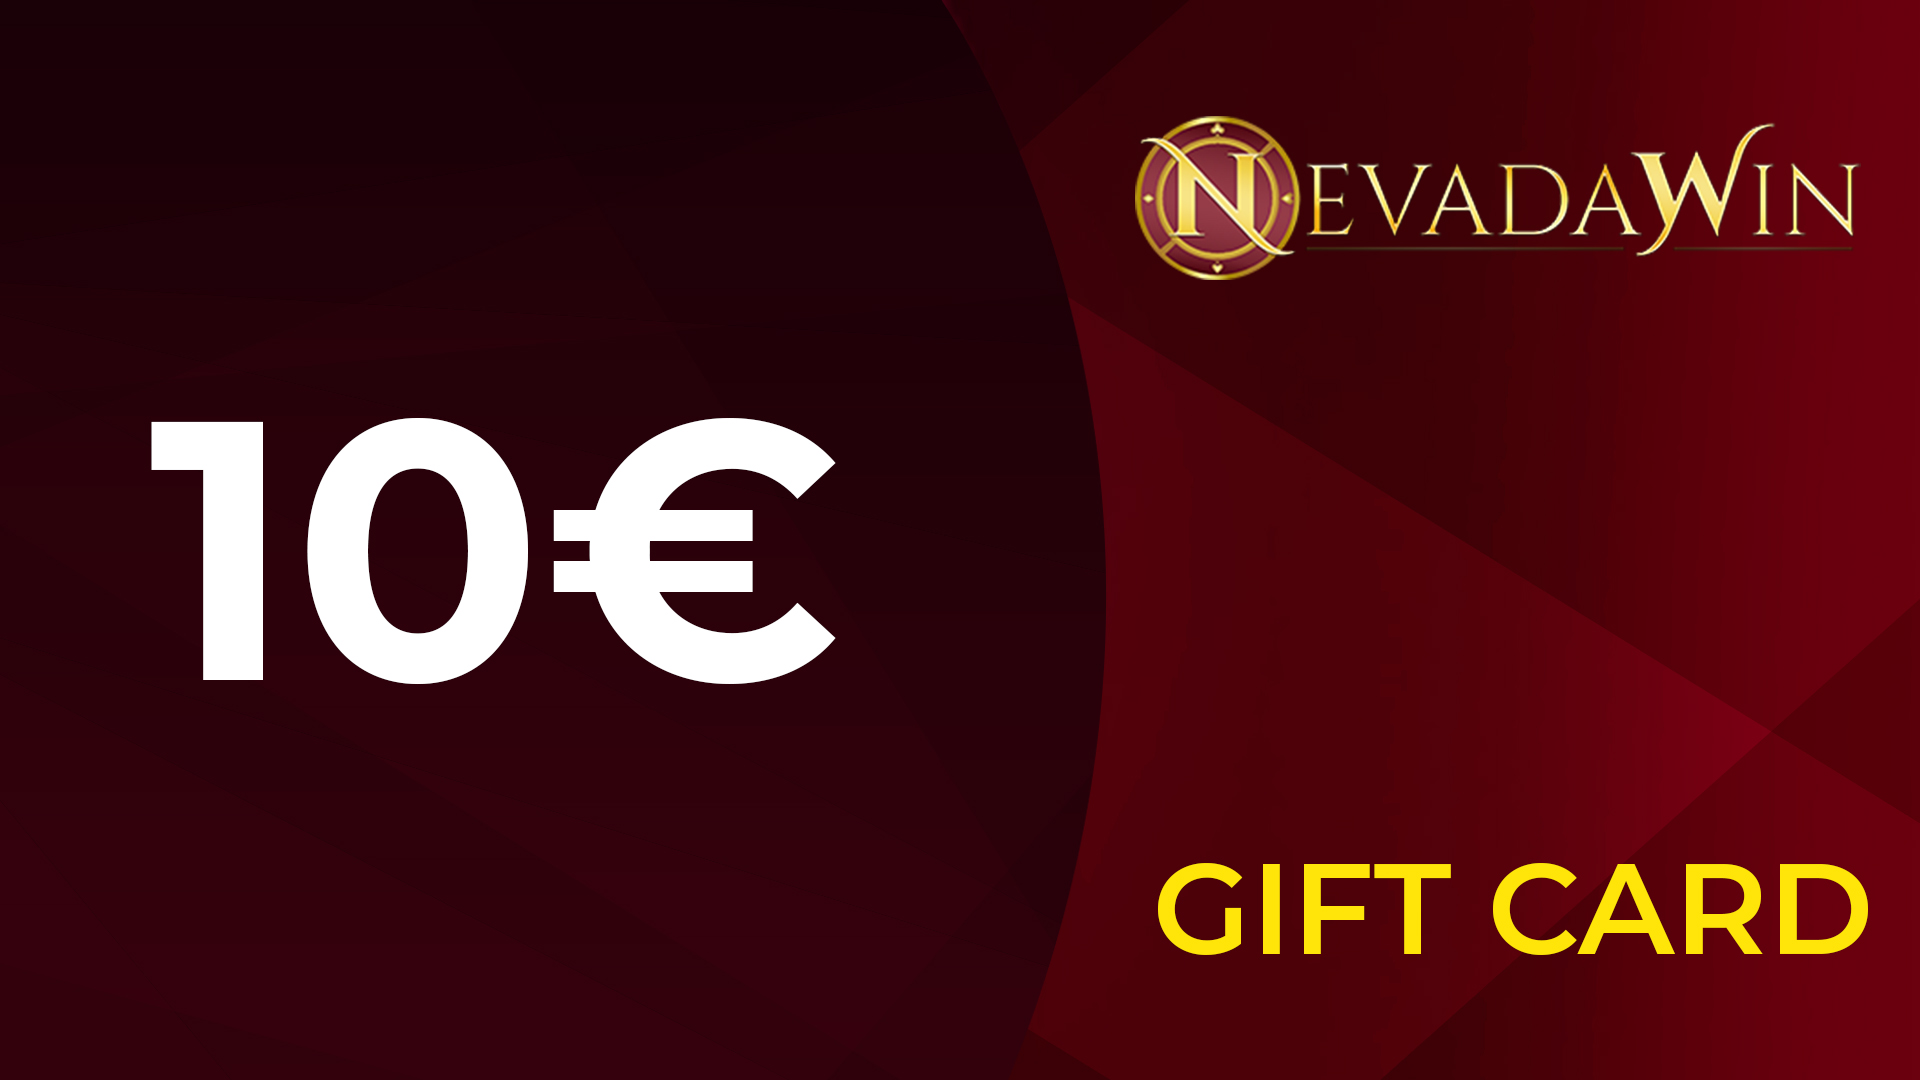 NevadaWin €10 Giftcard [USD 10.99]